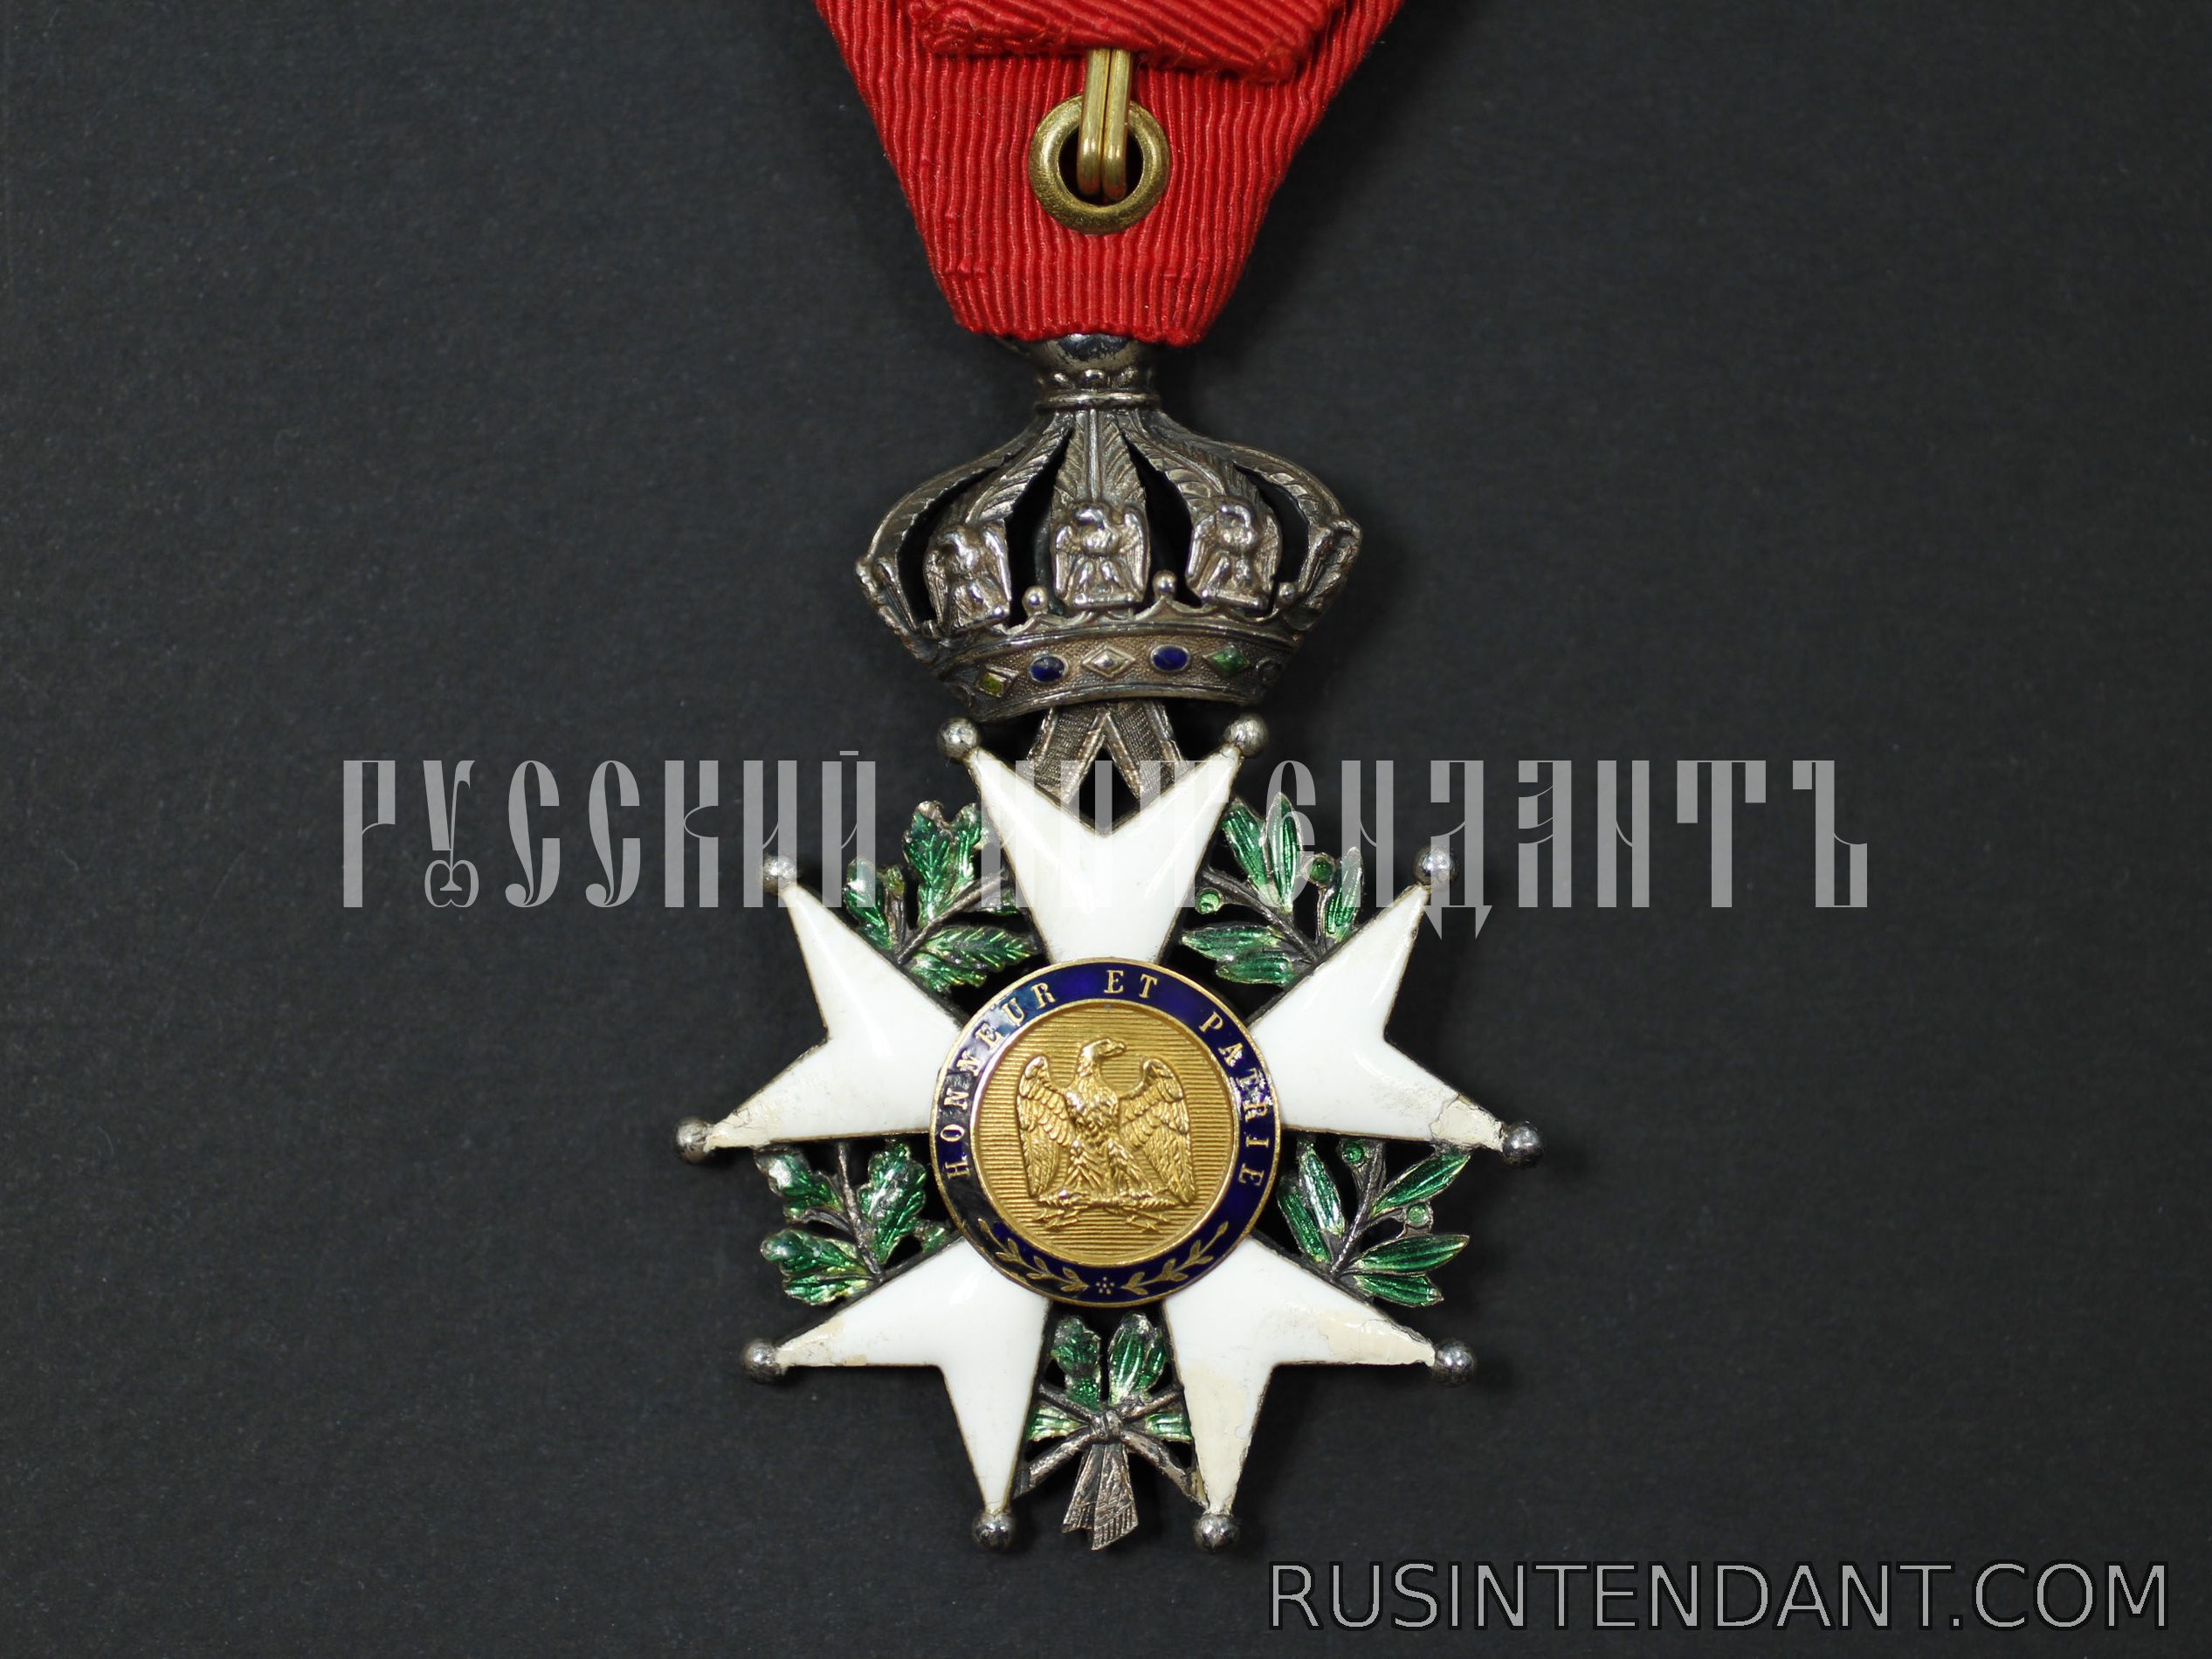 Фото 2: Знак ордена "Почетный Легион" 